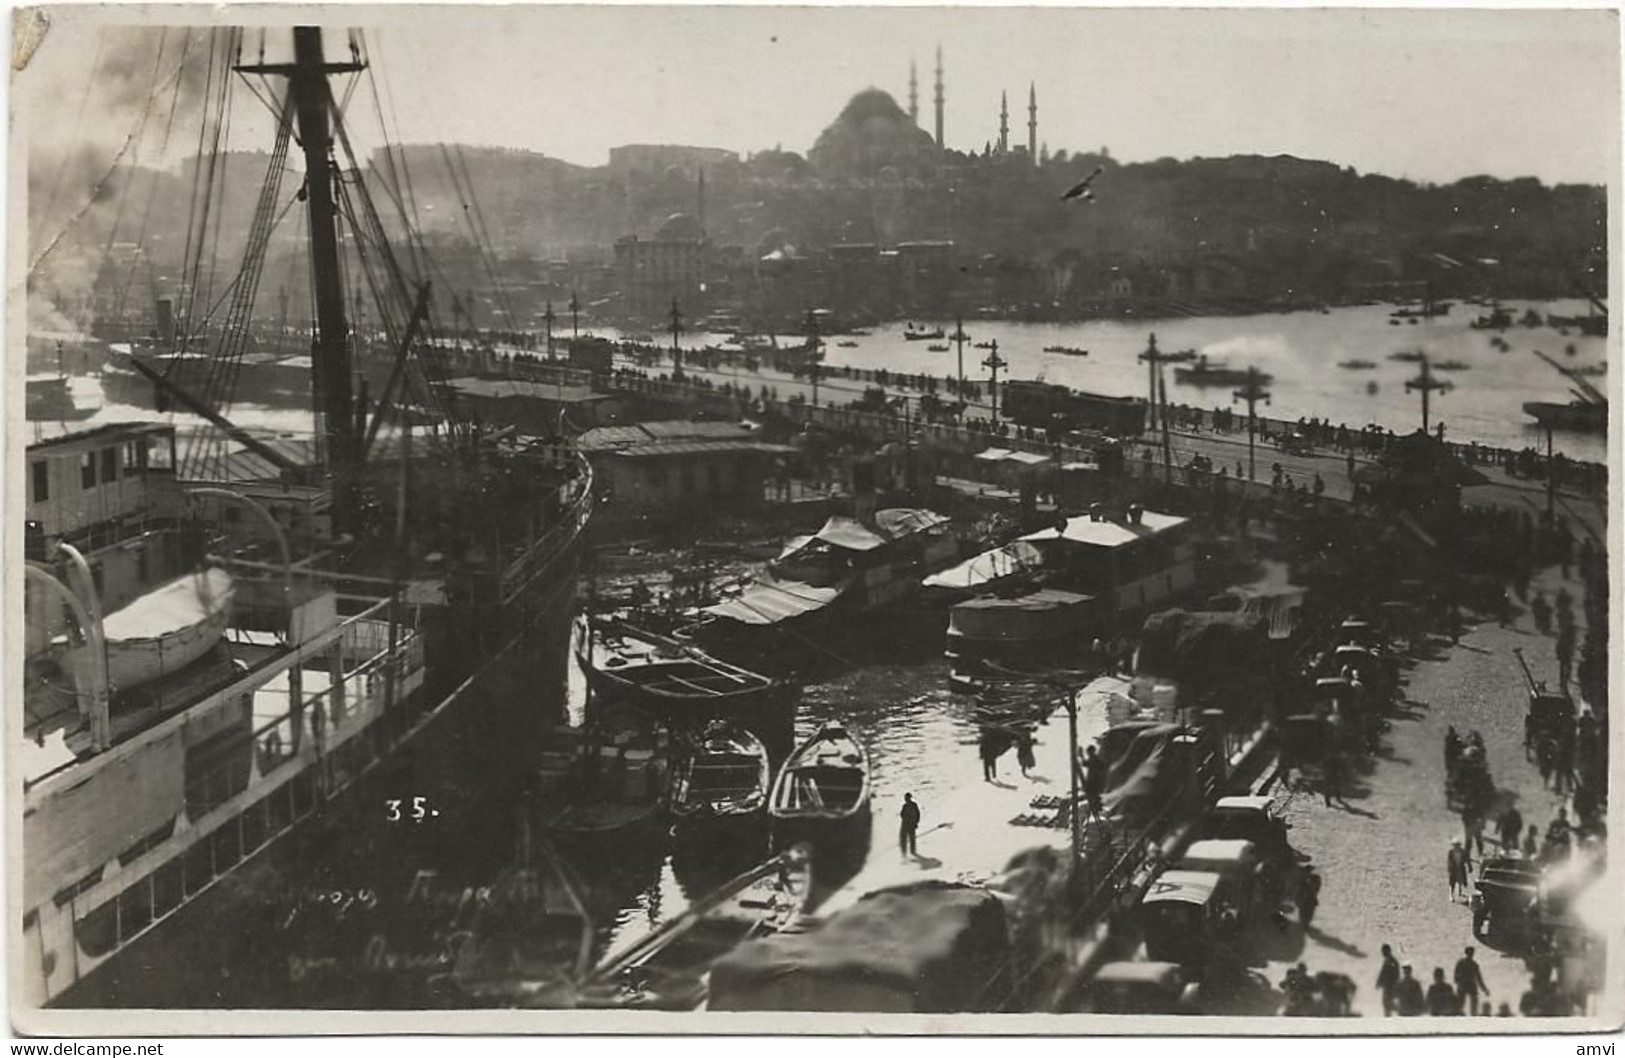 22-8-2685 Constantinople 1927 Rare Le Port Bateaux - Turkey